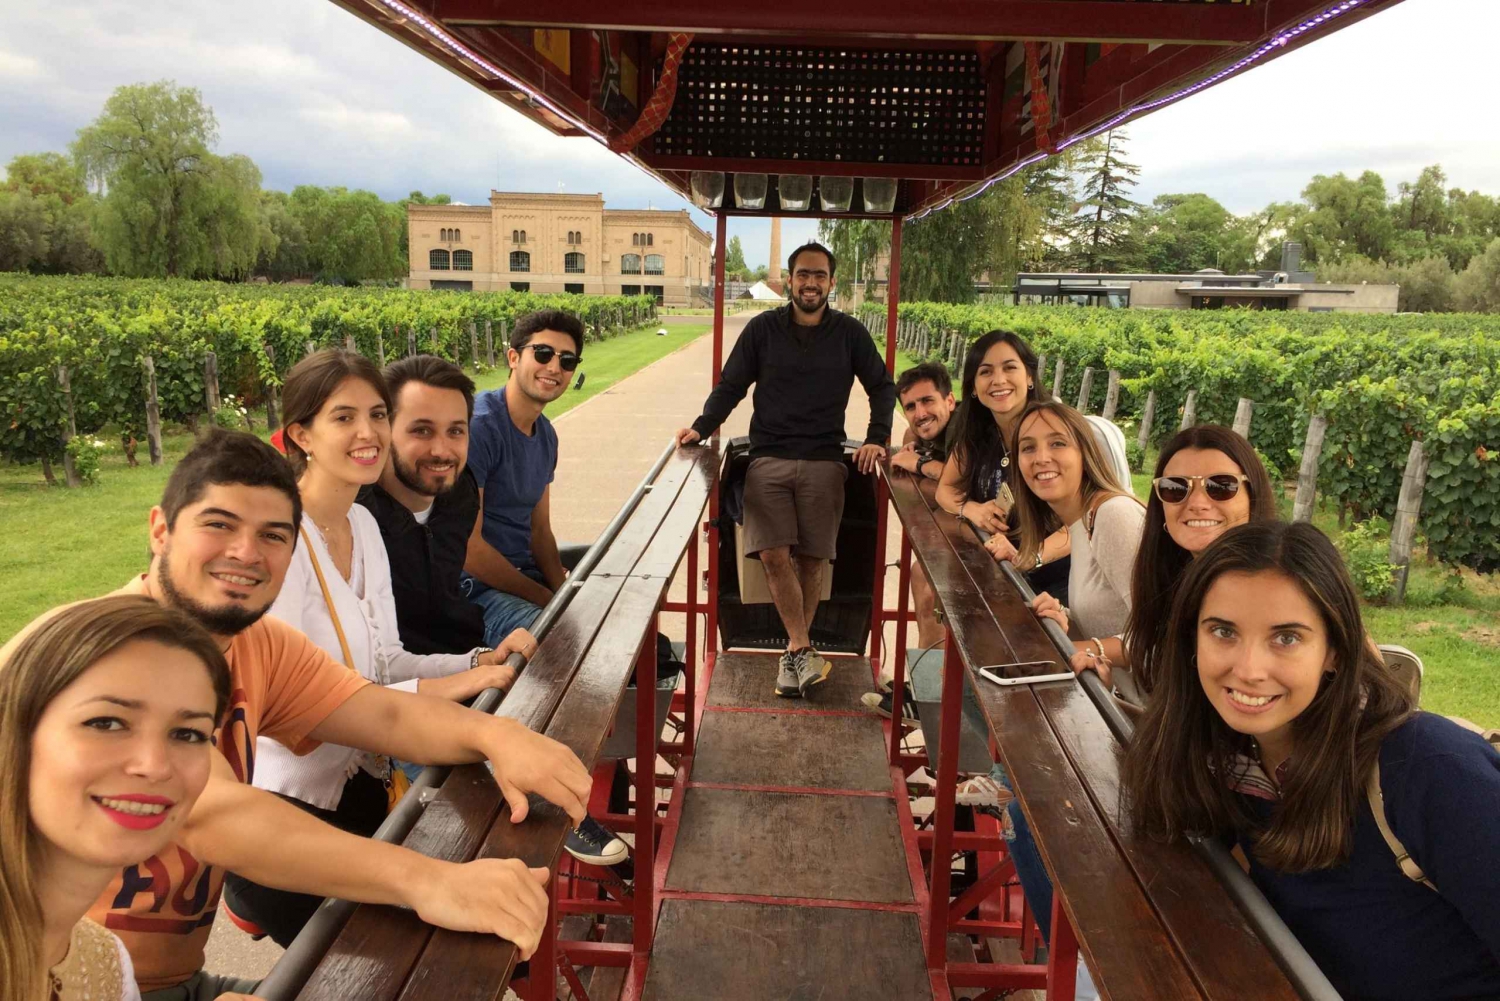 Mendoza: Weintour mit dem Rad & optionales Mittagessen